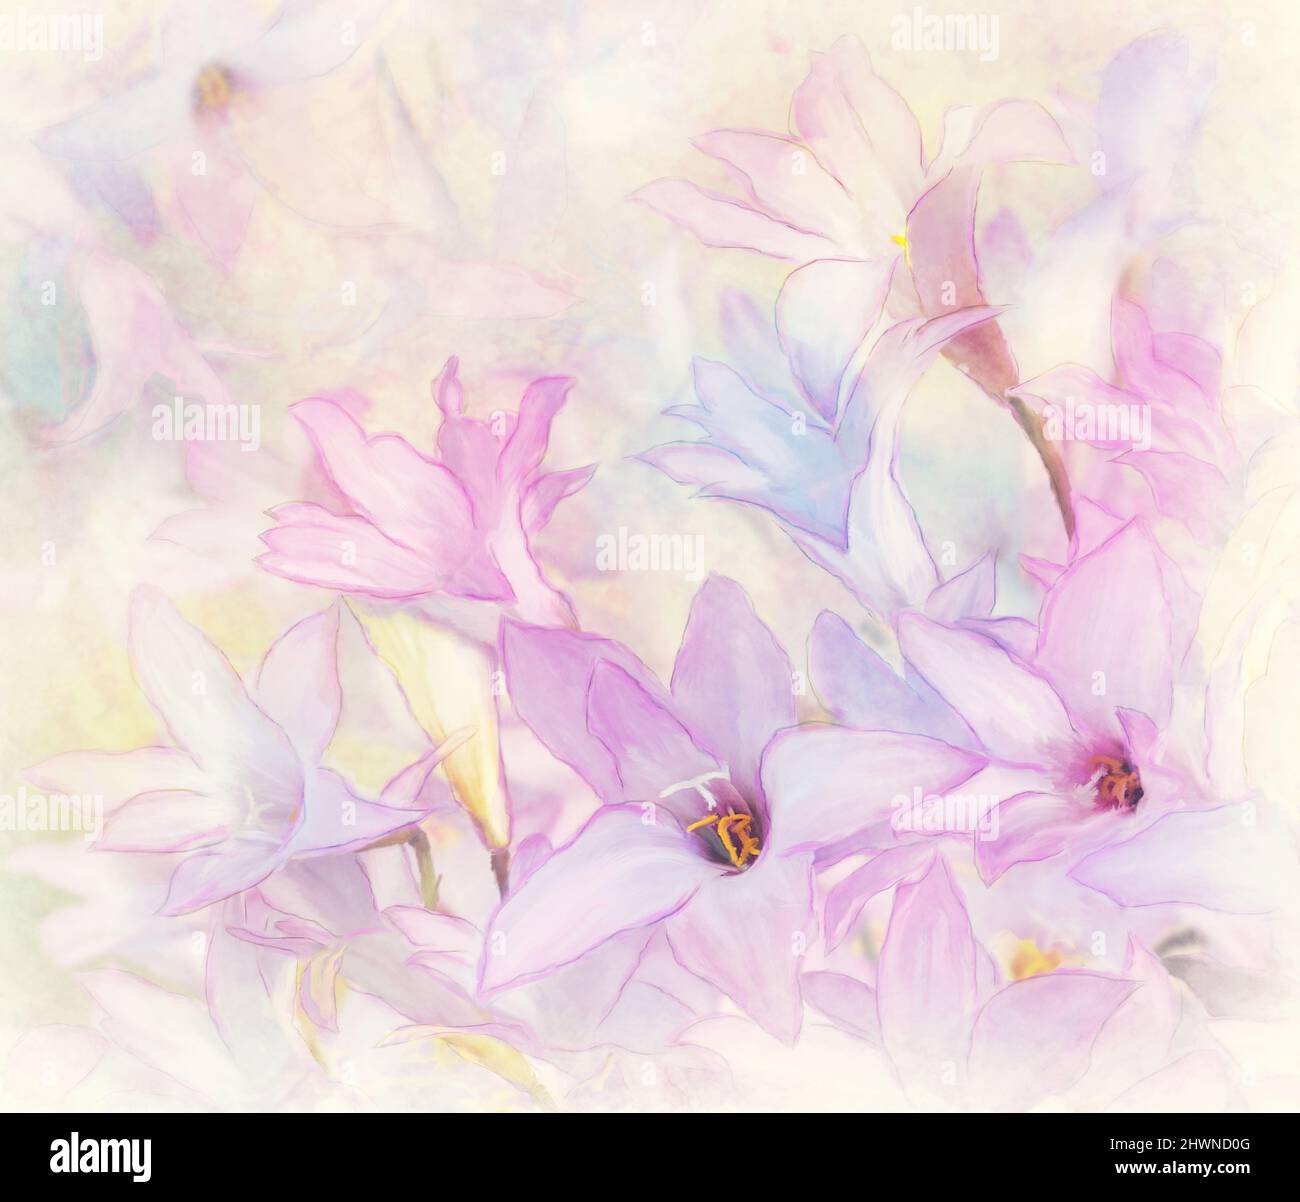 Sfondo del fiore Watercolor.Digital Illustration. Foto Stock